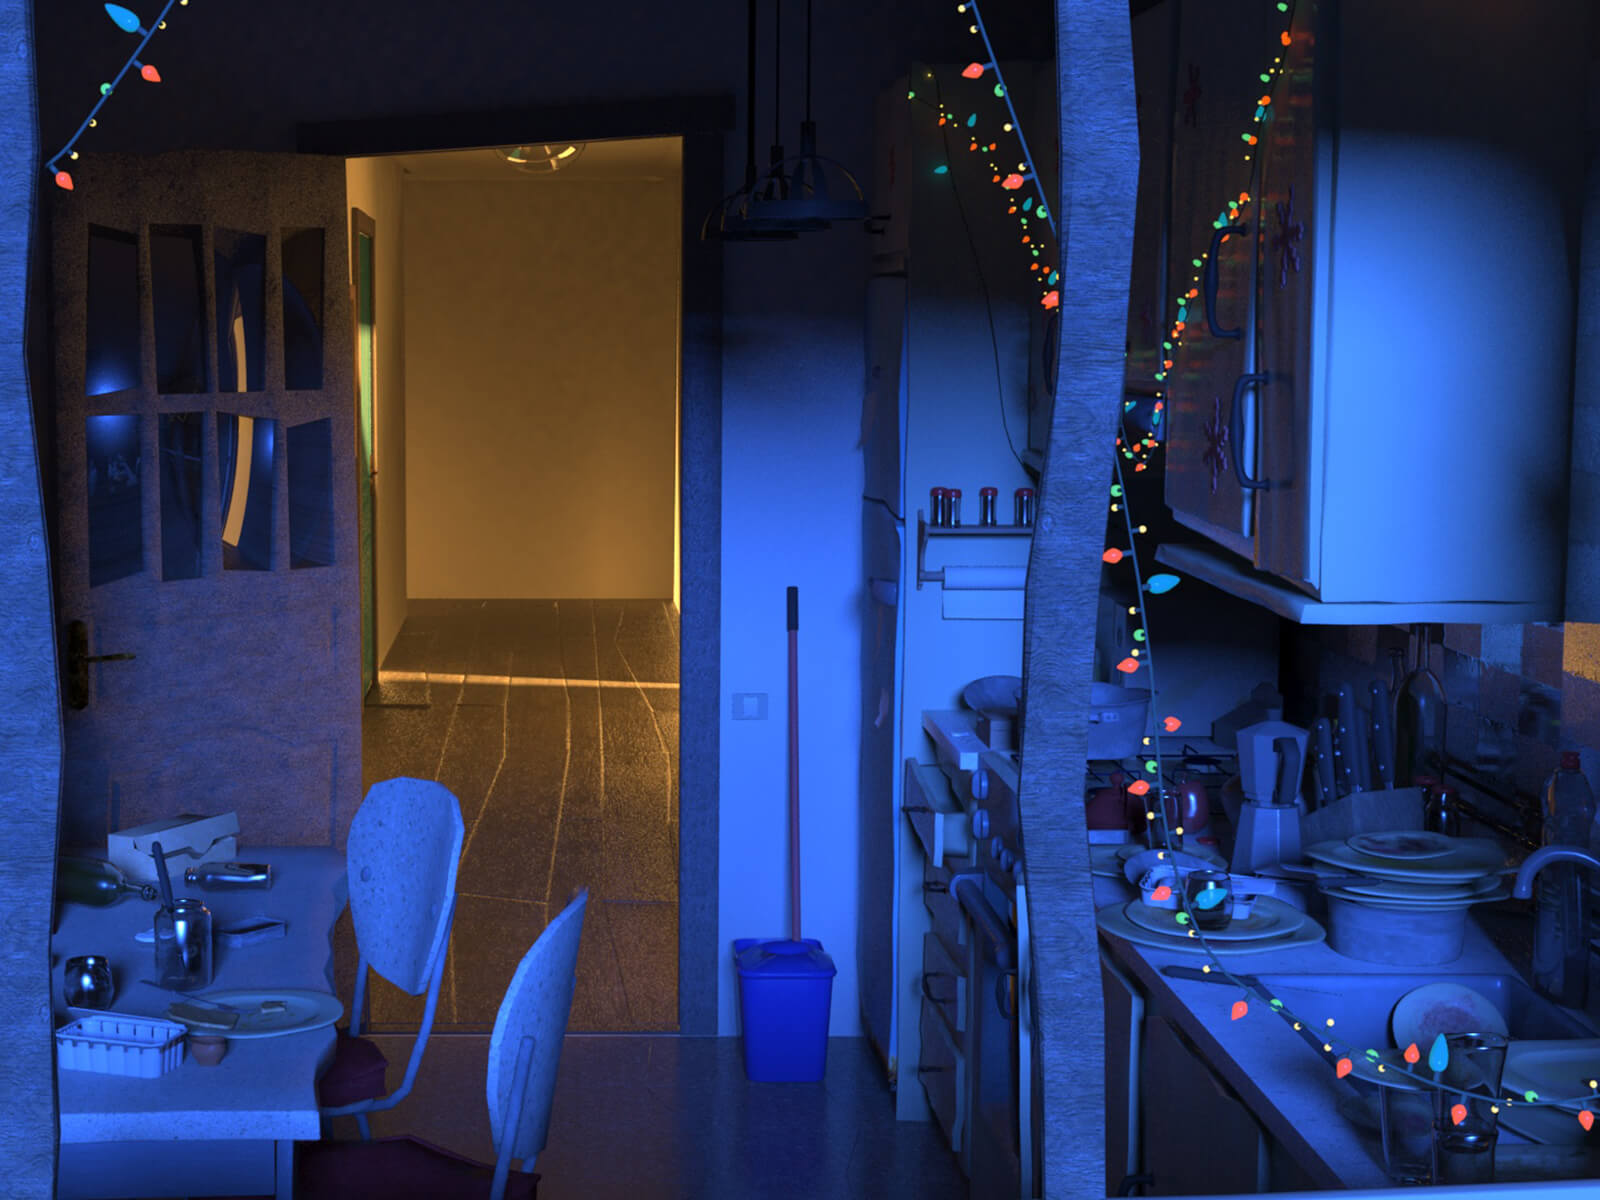 Una cocina oscura y desordenada decorada con luces festivas. Al fondo, una puerta abierta a un pasillo iluminado.